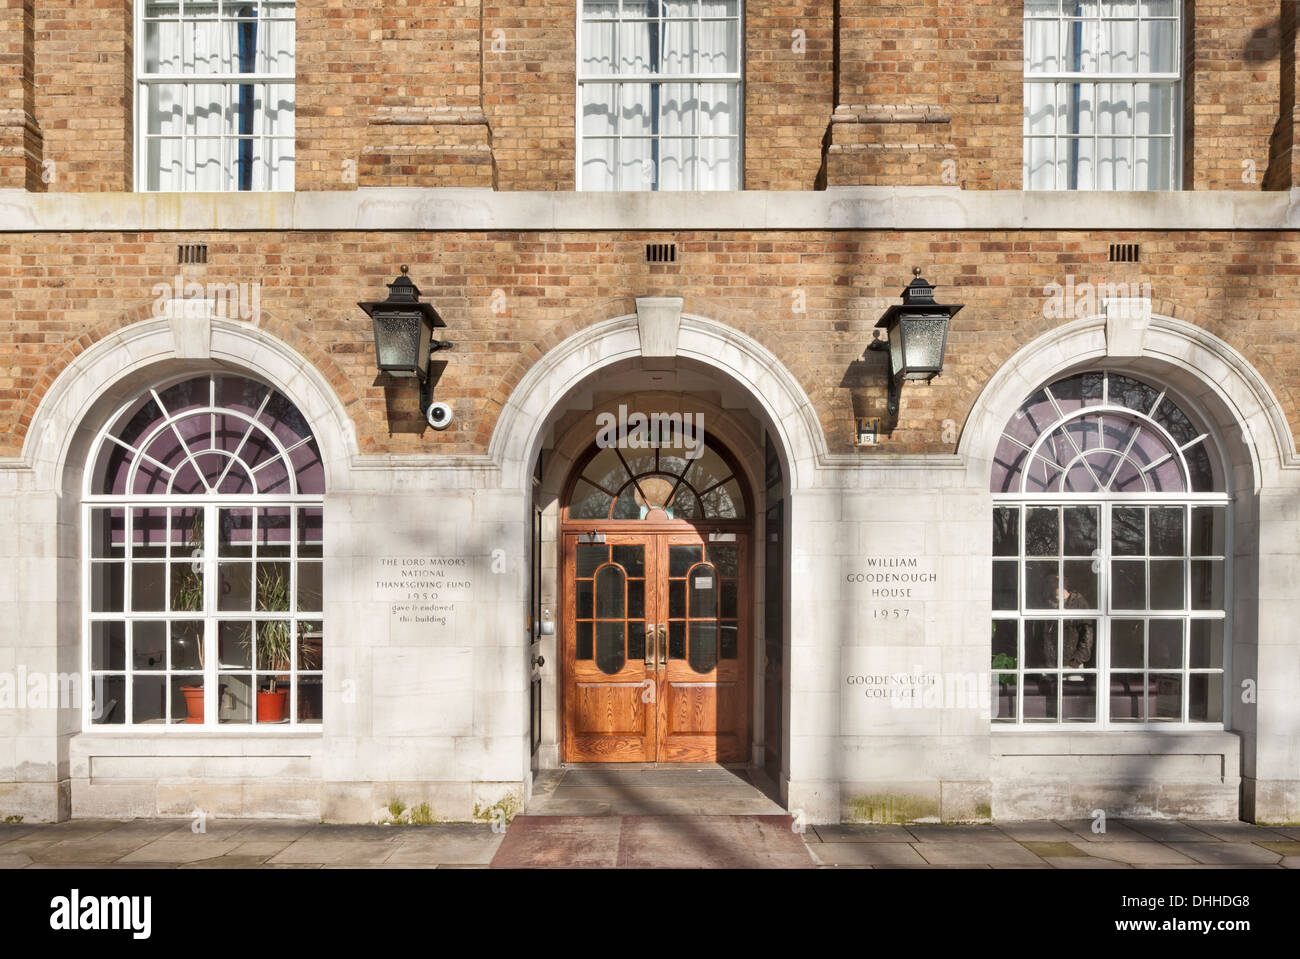 William Goodenough Haus am Goodenough College, London, Vereinigtes Königreich. Architekt: Wilson Mason und Partner, 2013. Eingang. Stockfoto